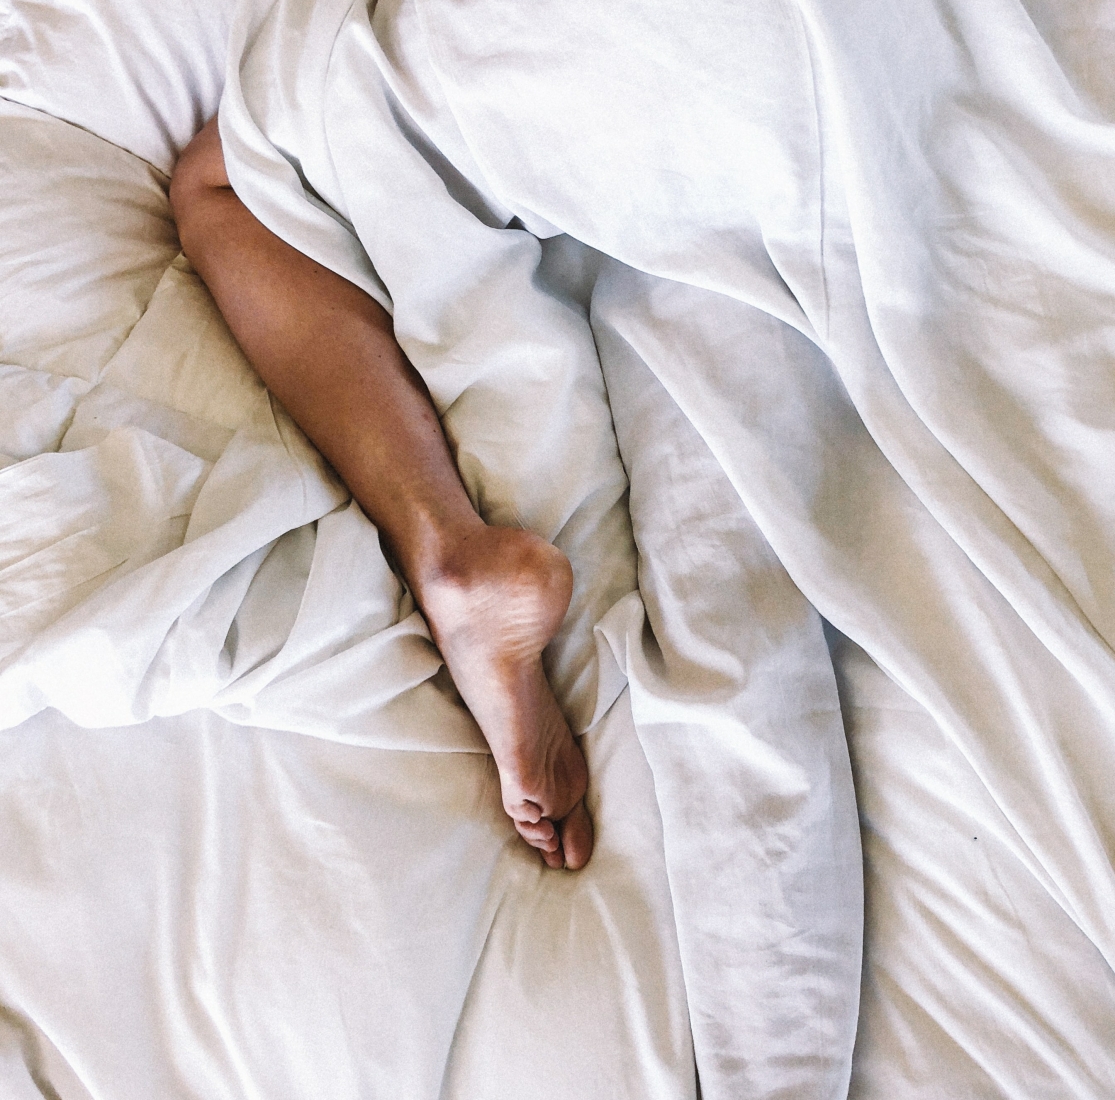 Slaapproblemen: de belangrijkste oorzaken